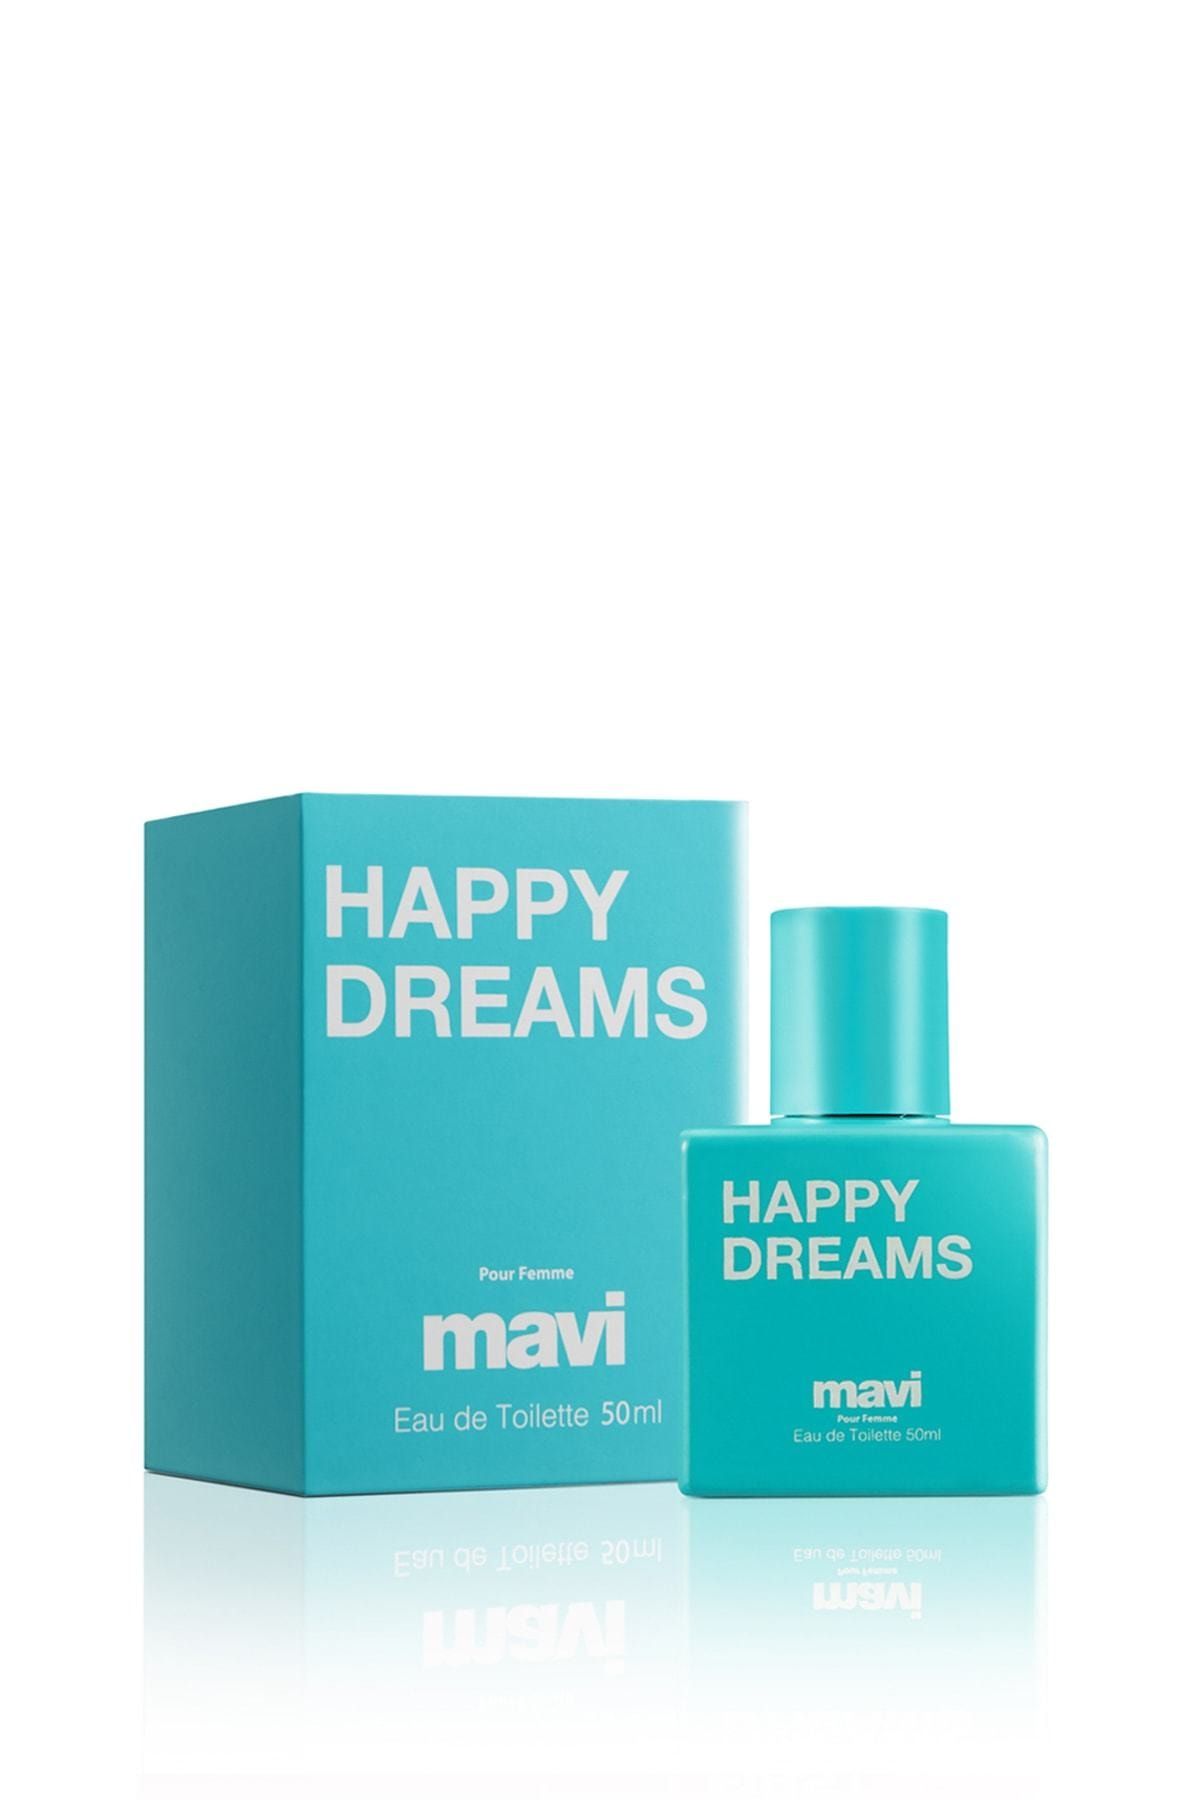 عطر زنانه 50 میل هپی دریمیز ماوی Happy Dreams Mavi